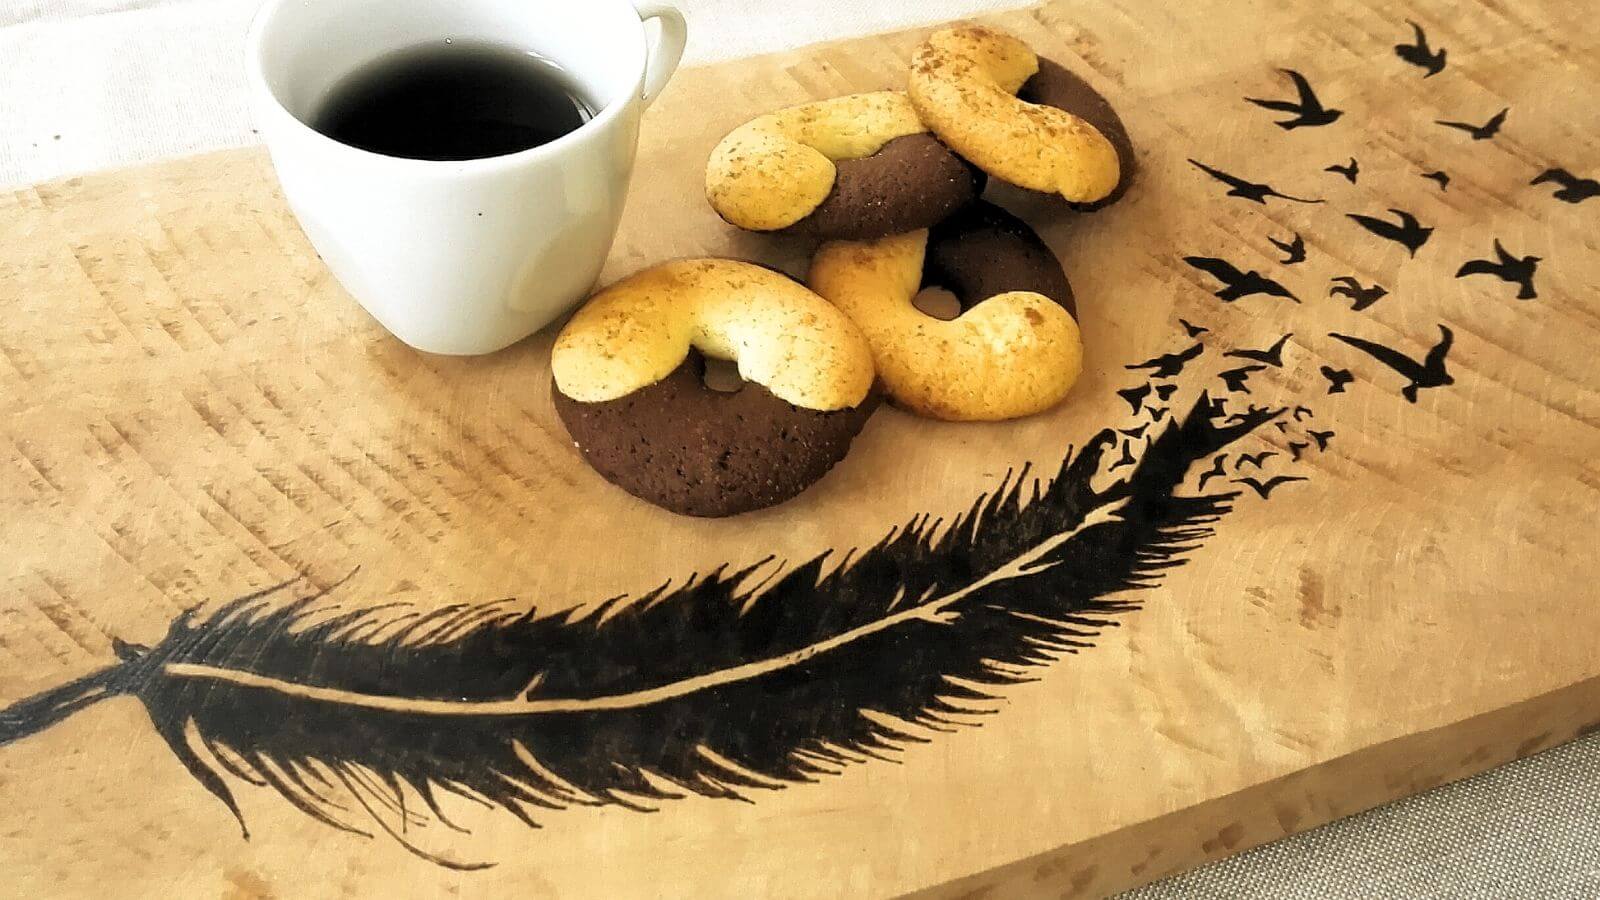 Vassoio decorato con la pirografia con biscotti e caffè